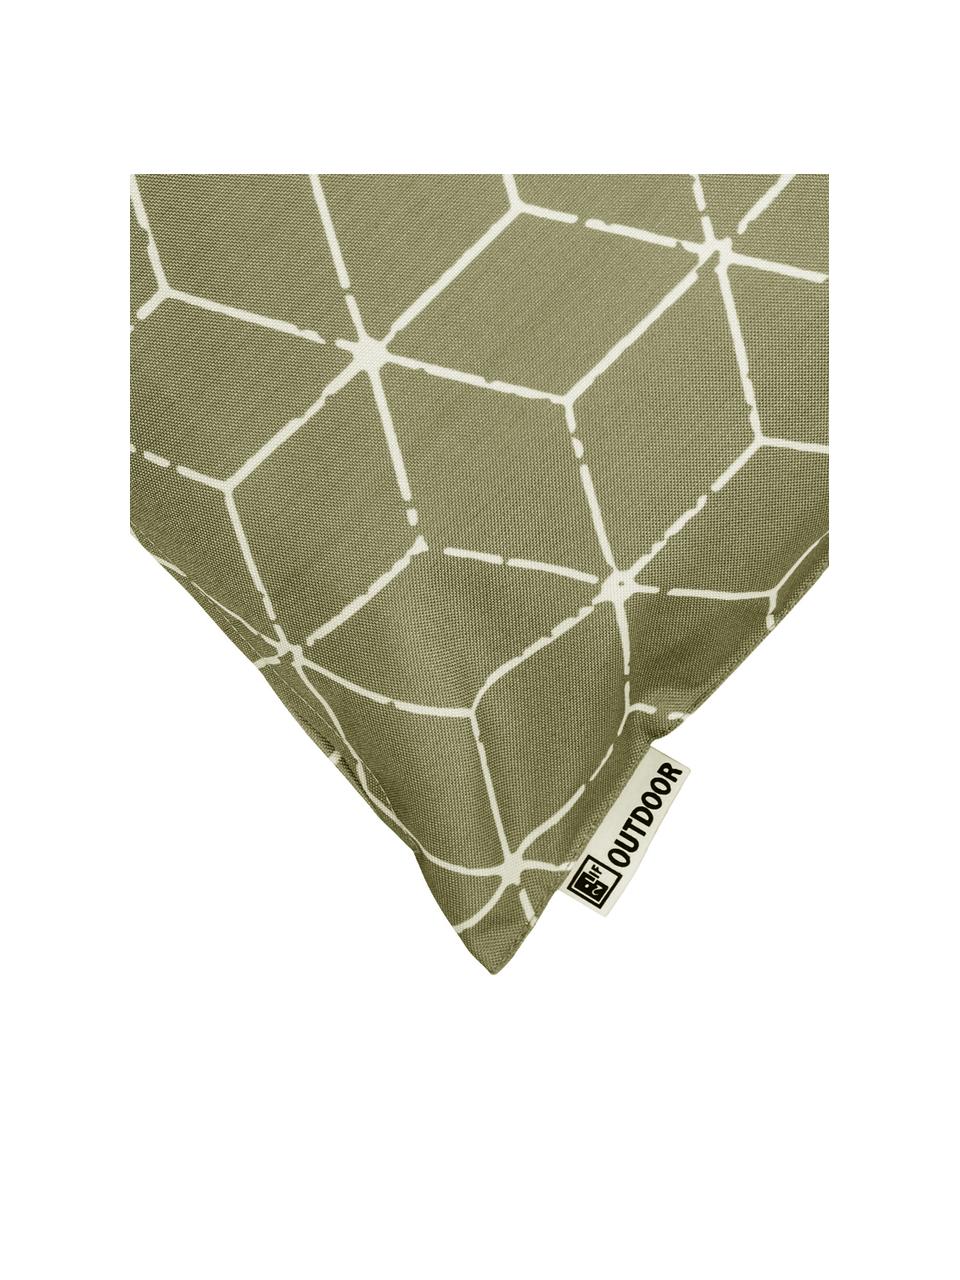 Outdoor-Kissen Cube mit grafischem Muster in Grün/Weiss, mit Inlett, 100% Polyester, Taupe, Weiss, 30 x 50 cm